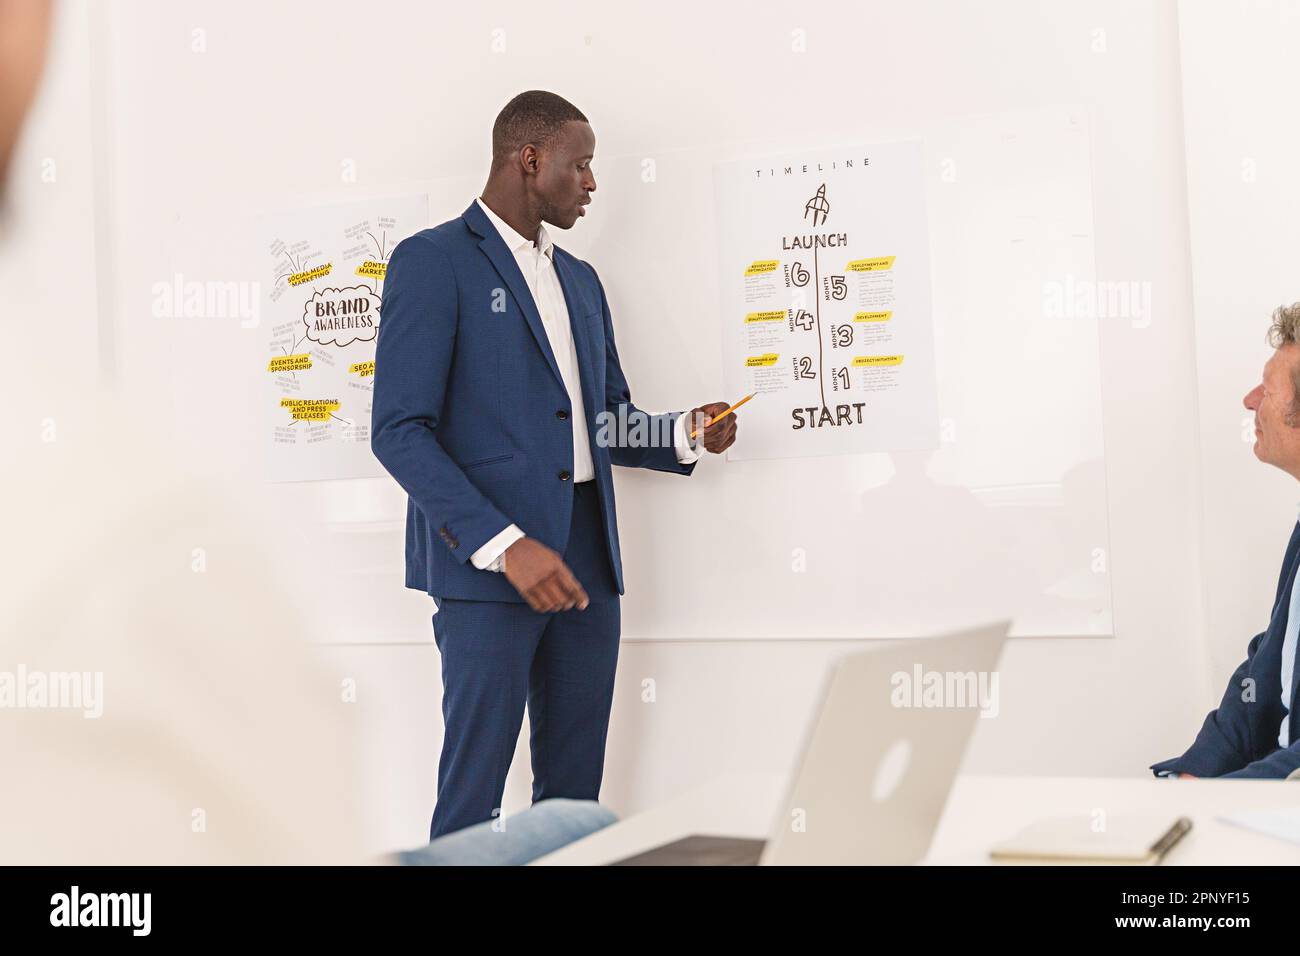 Eine 30-jährige, farbige Person in einem Hemd ohne Krawatte stellt als Kollege mit einem Bleistift eine Unternehmens-Roadmap an der Wand vor Stockfoto